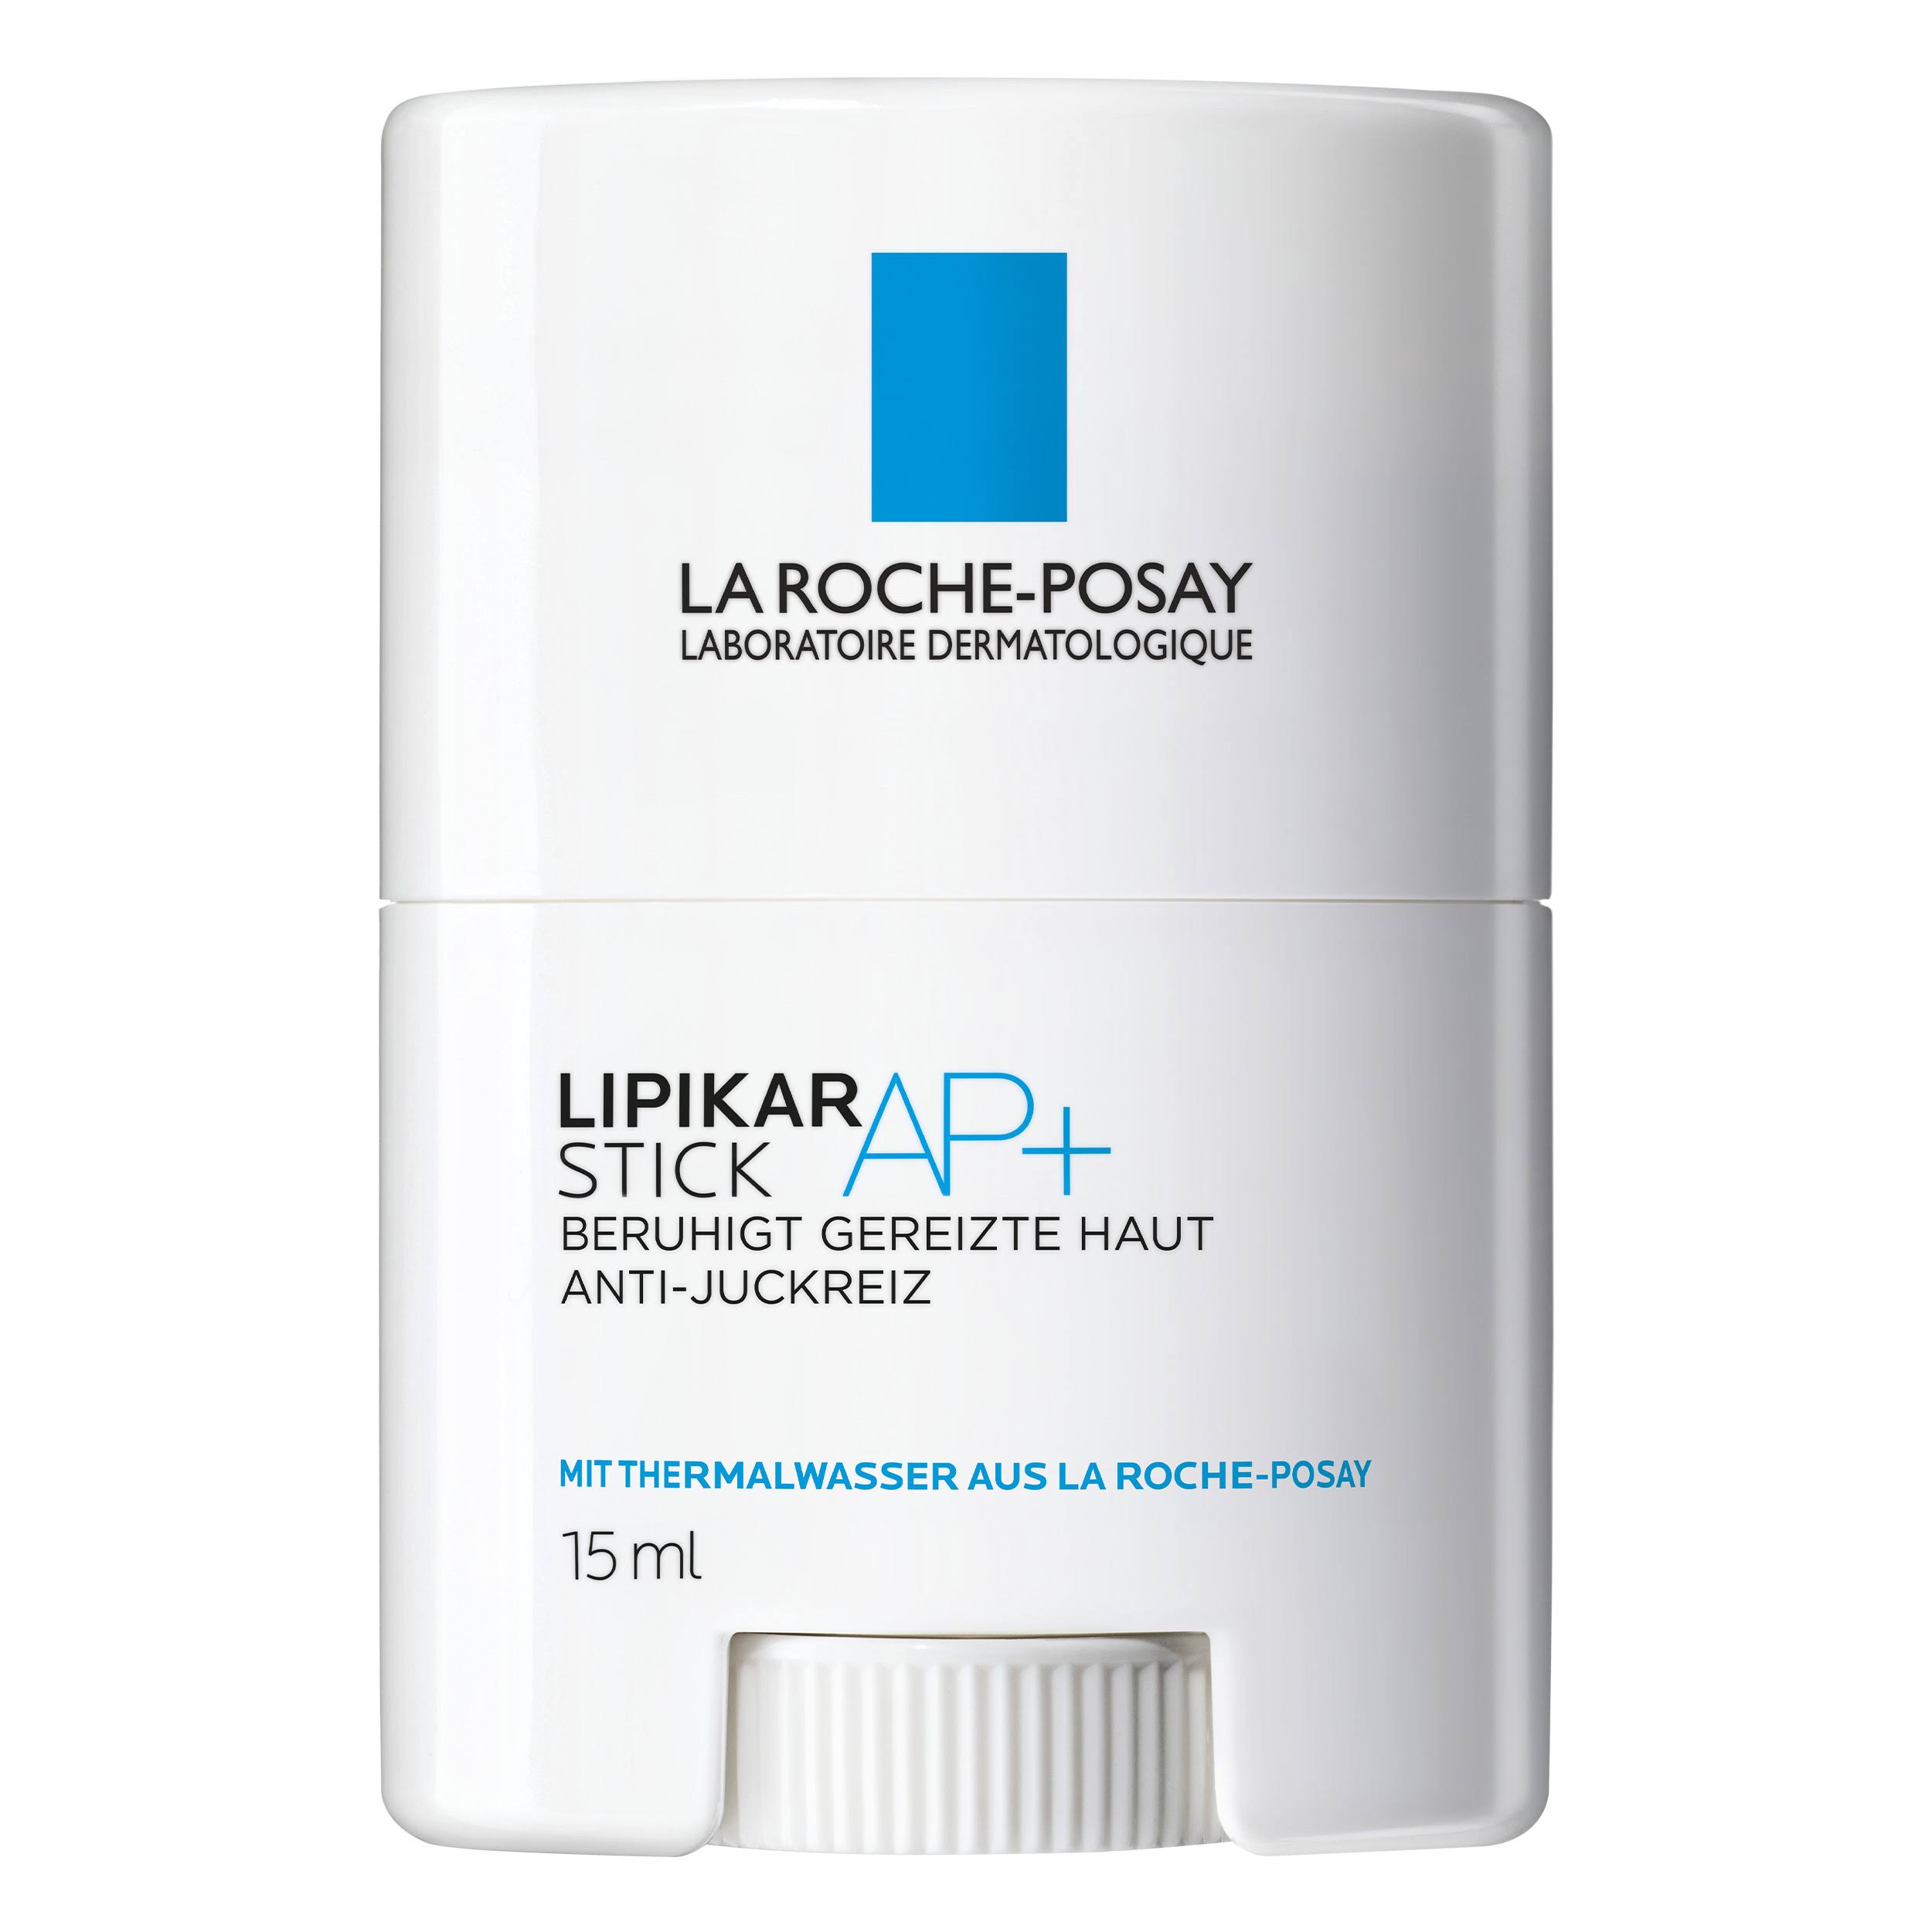 La Roche-Posay Lipikar AP Plus Stick - 15ml